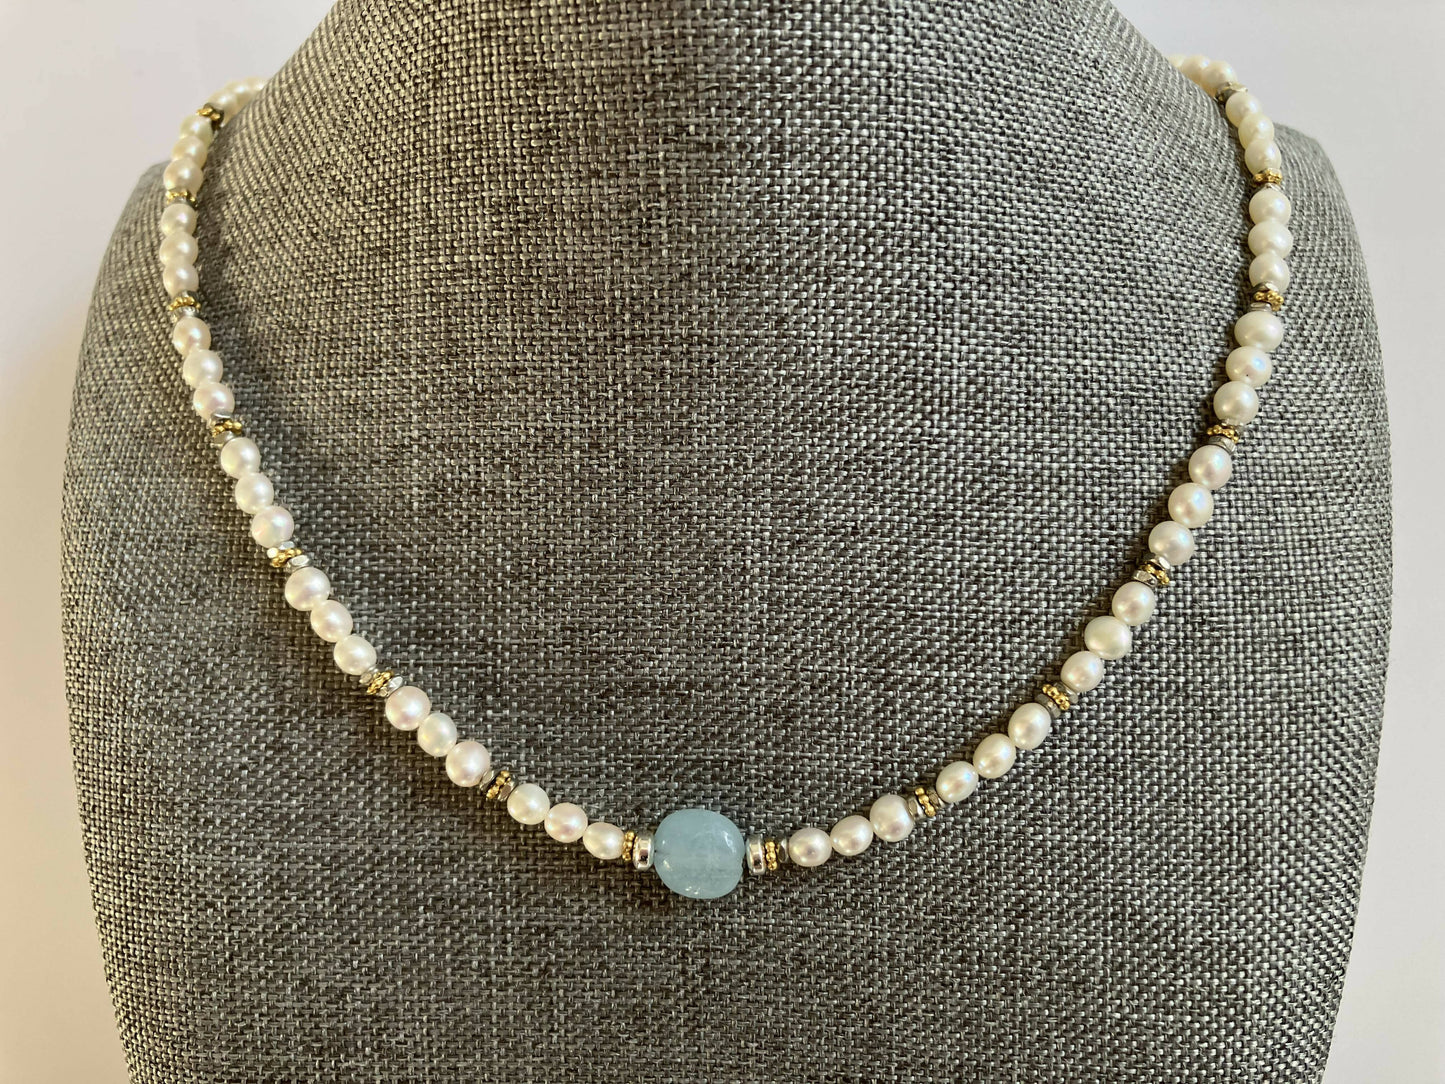 necklace - aquamarine, pearl